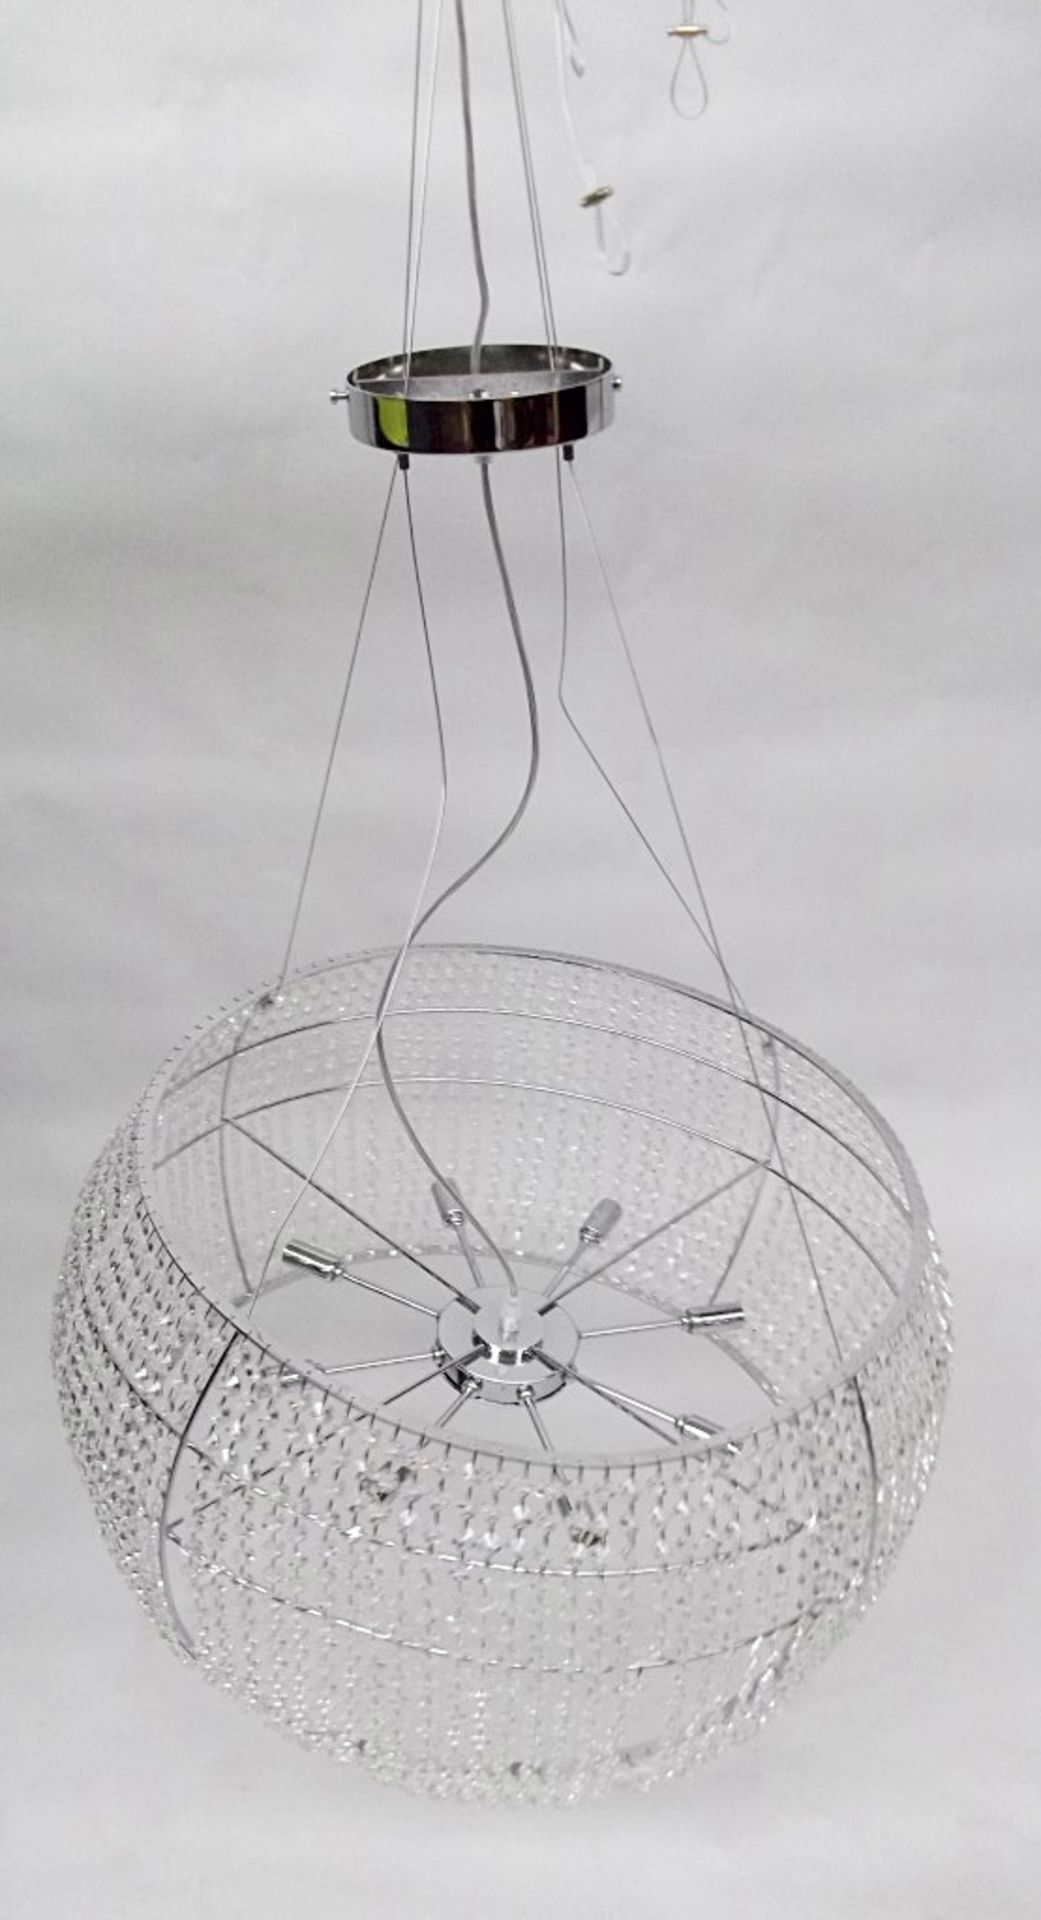 1 x CATTELAN KIDAL Ceiling Lamp - Diameter 50cm, Height 33cm - Ref: 4427072B - CL087 - Location: - Image 4 of 5